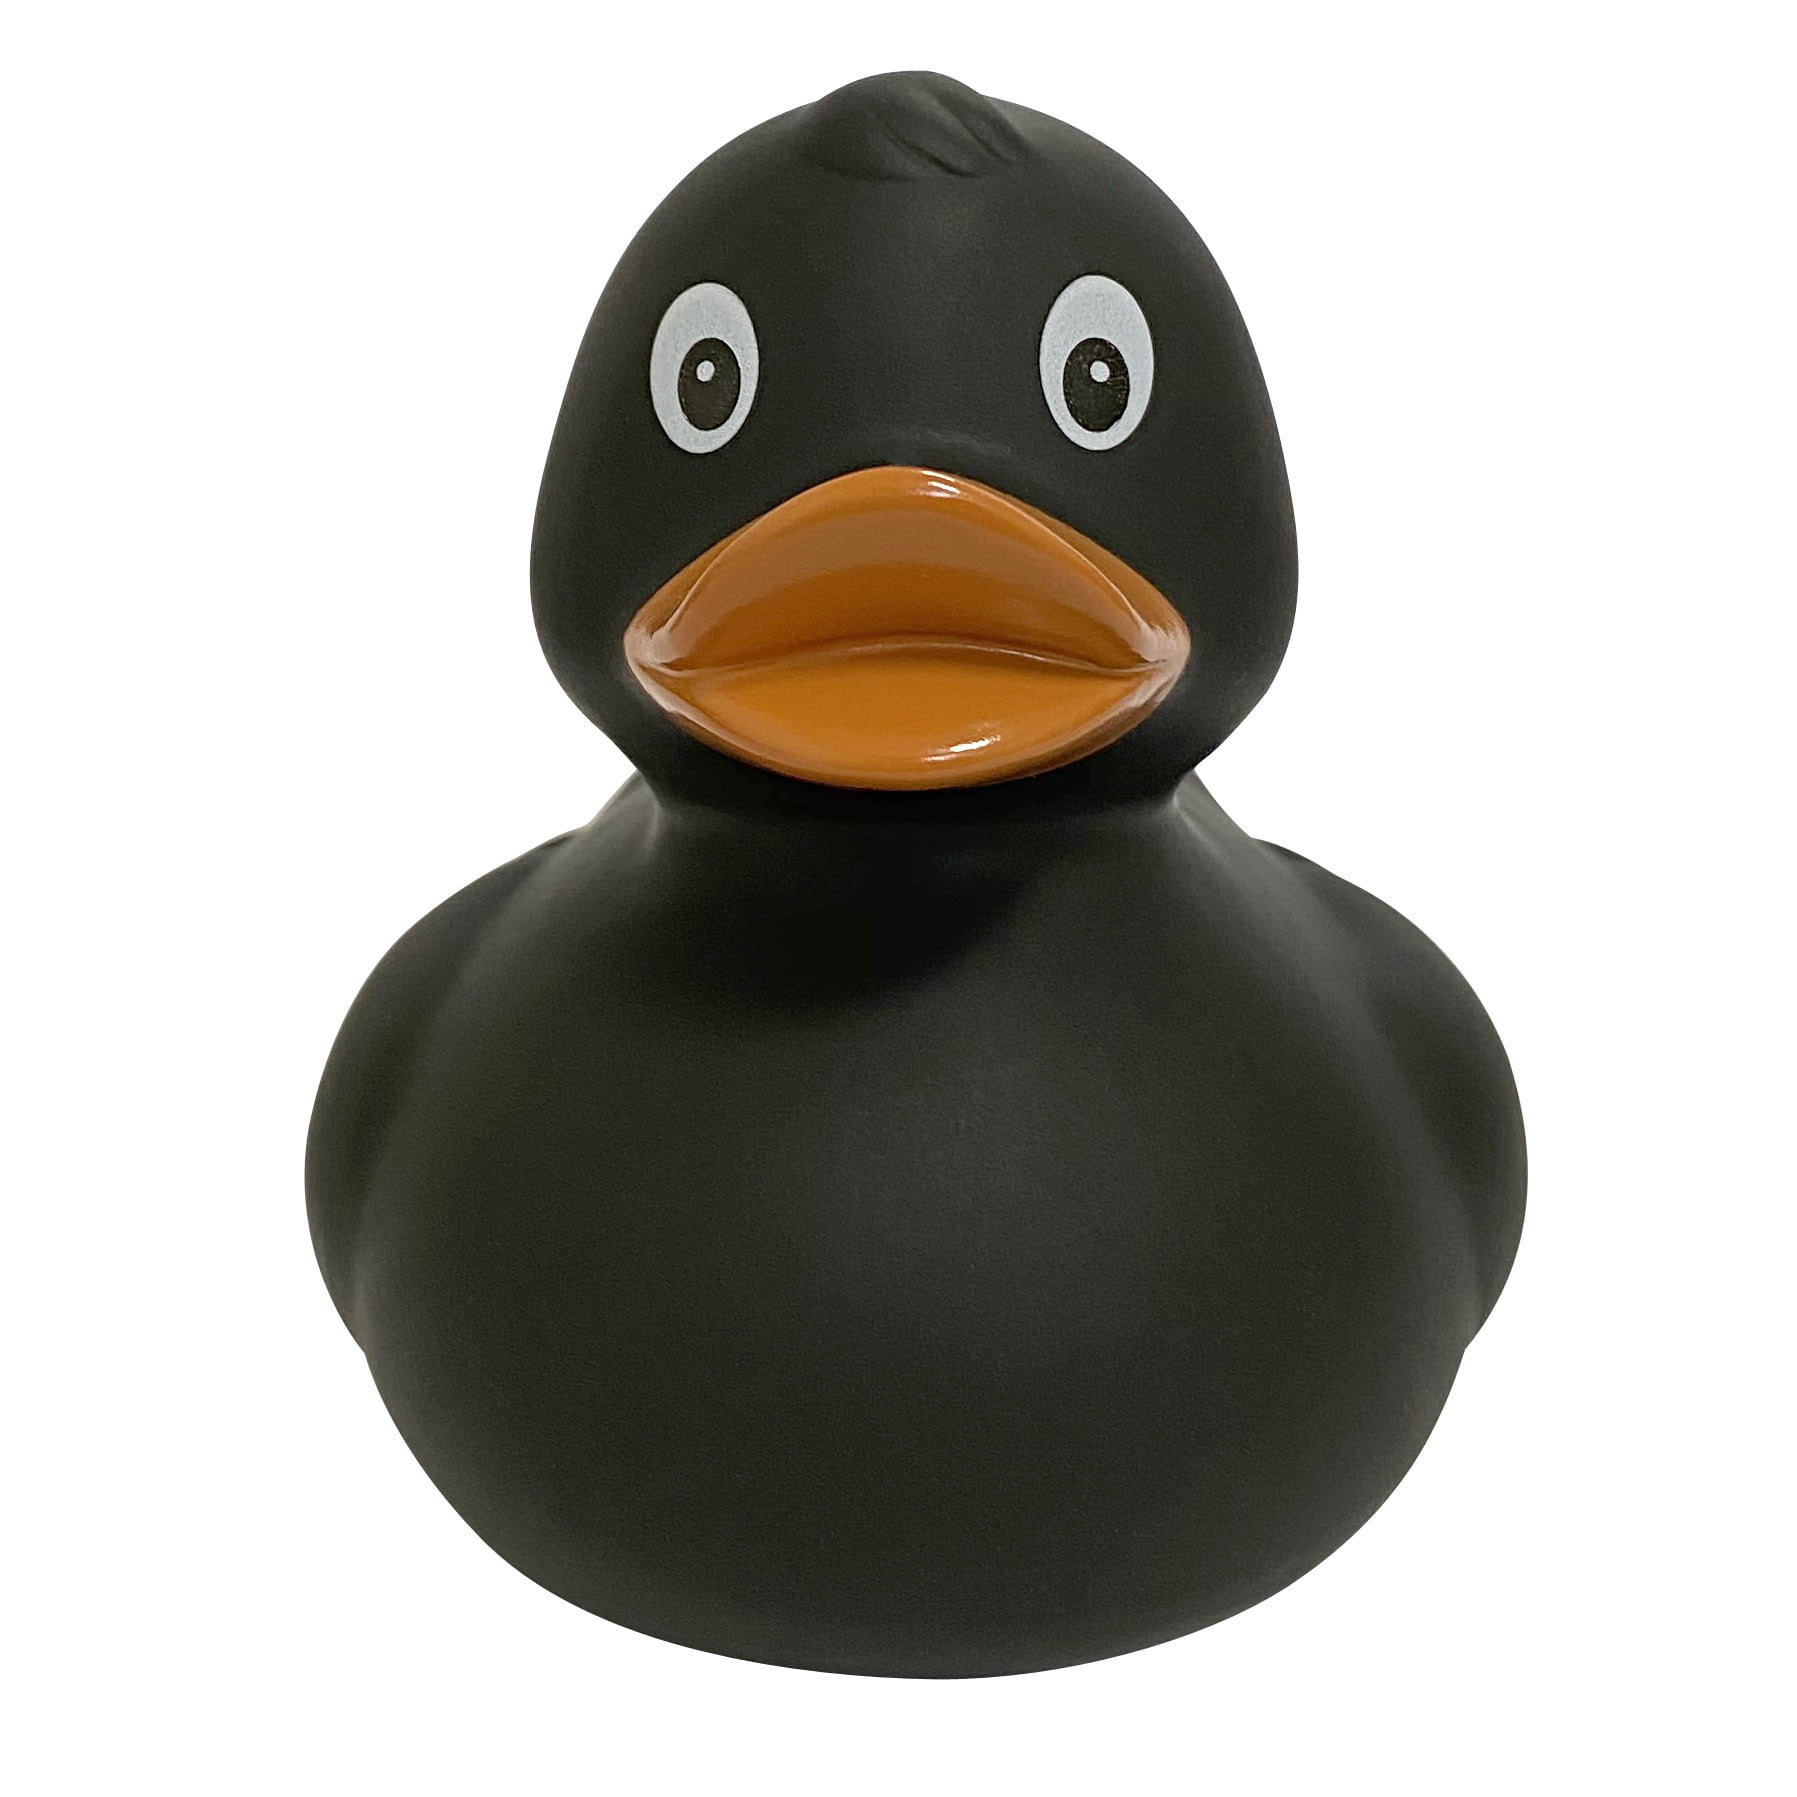 Игрушка для ванной FUNNY DUCKS Черная уточка игрушка для ванной funny ducks невеста уточка